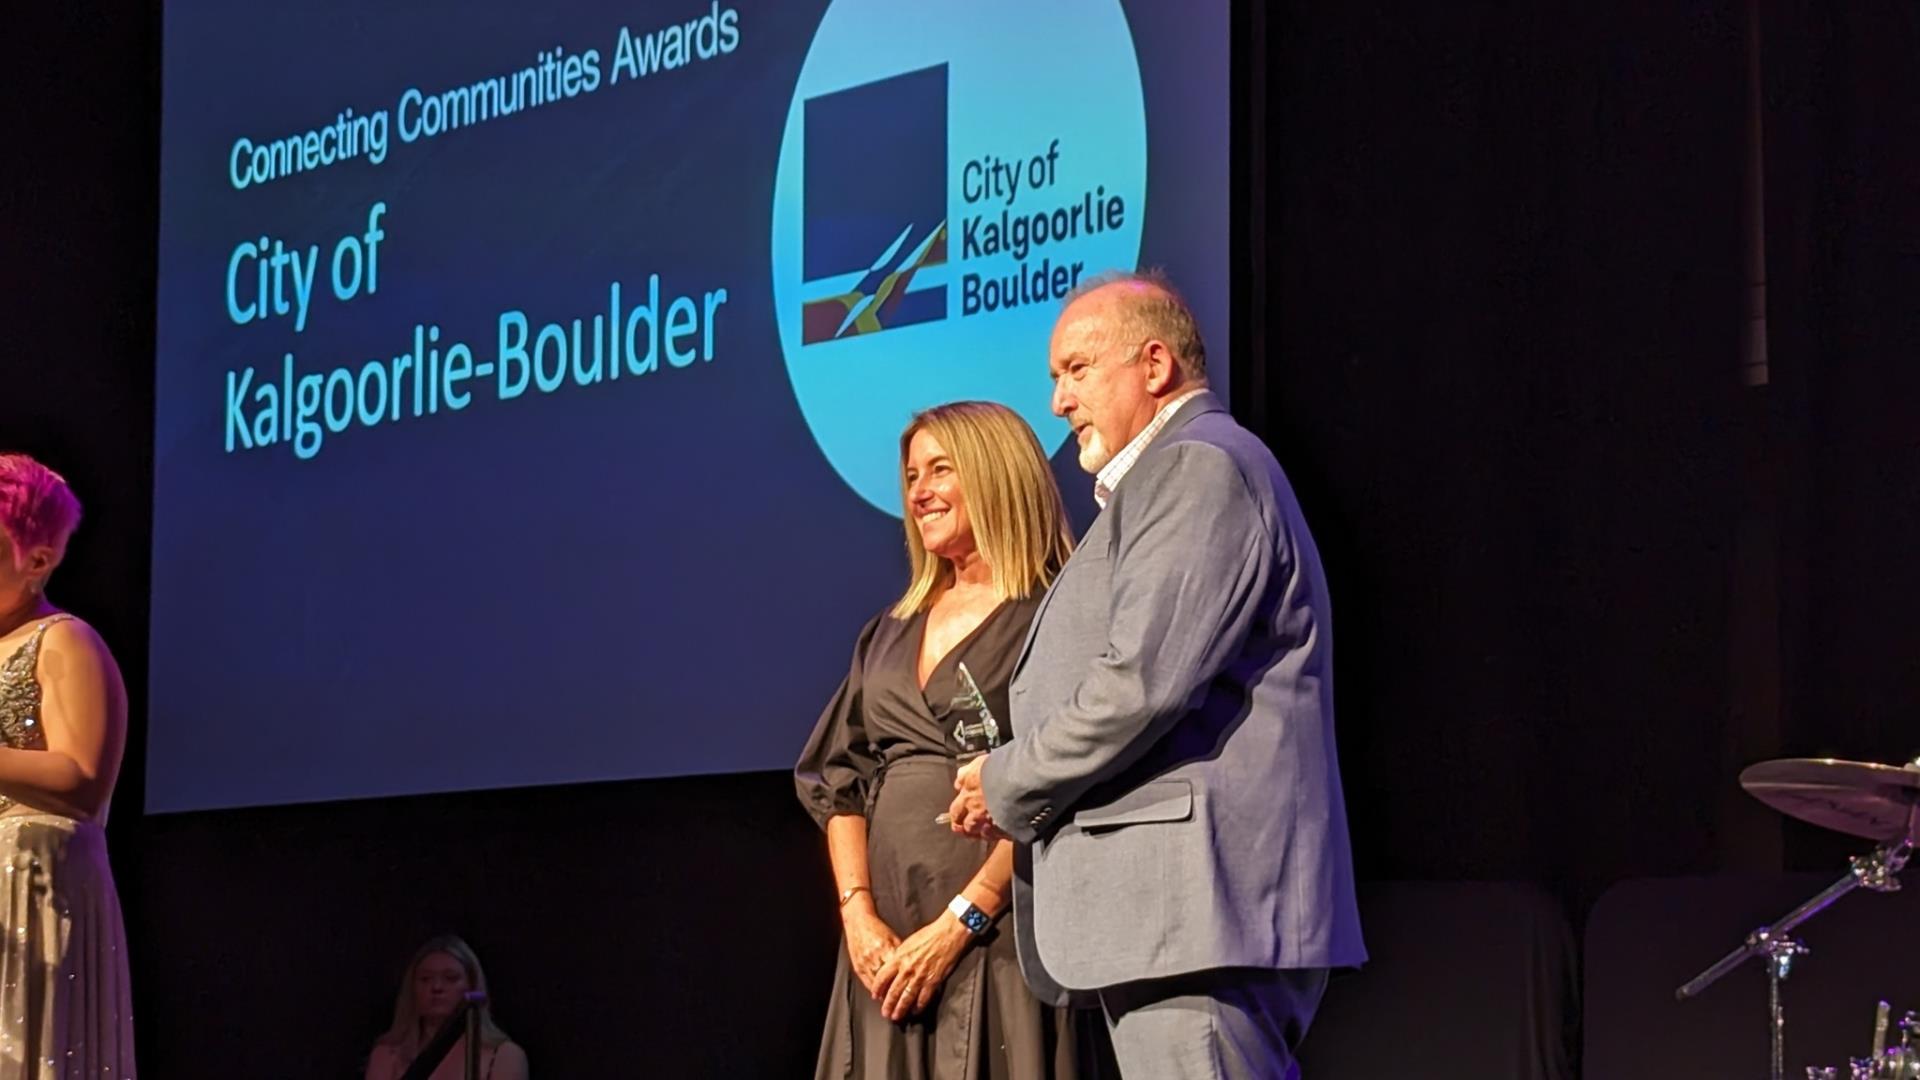 City of Kalgoorlie-Boulder Award Winners as Leaders in Delivering